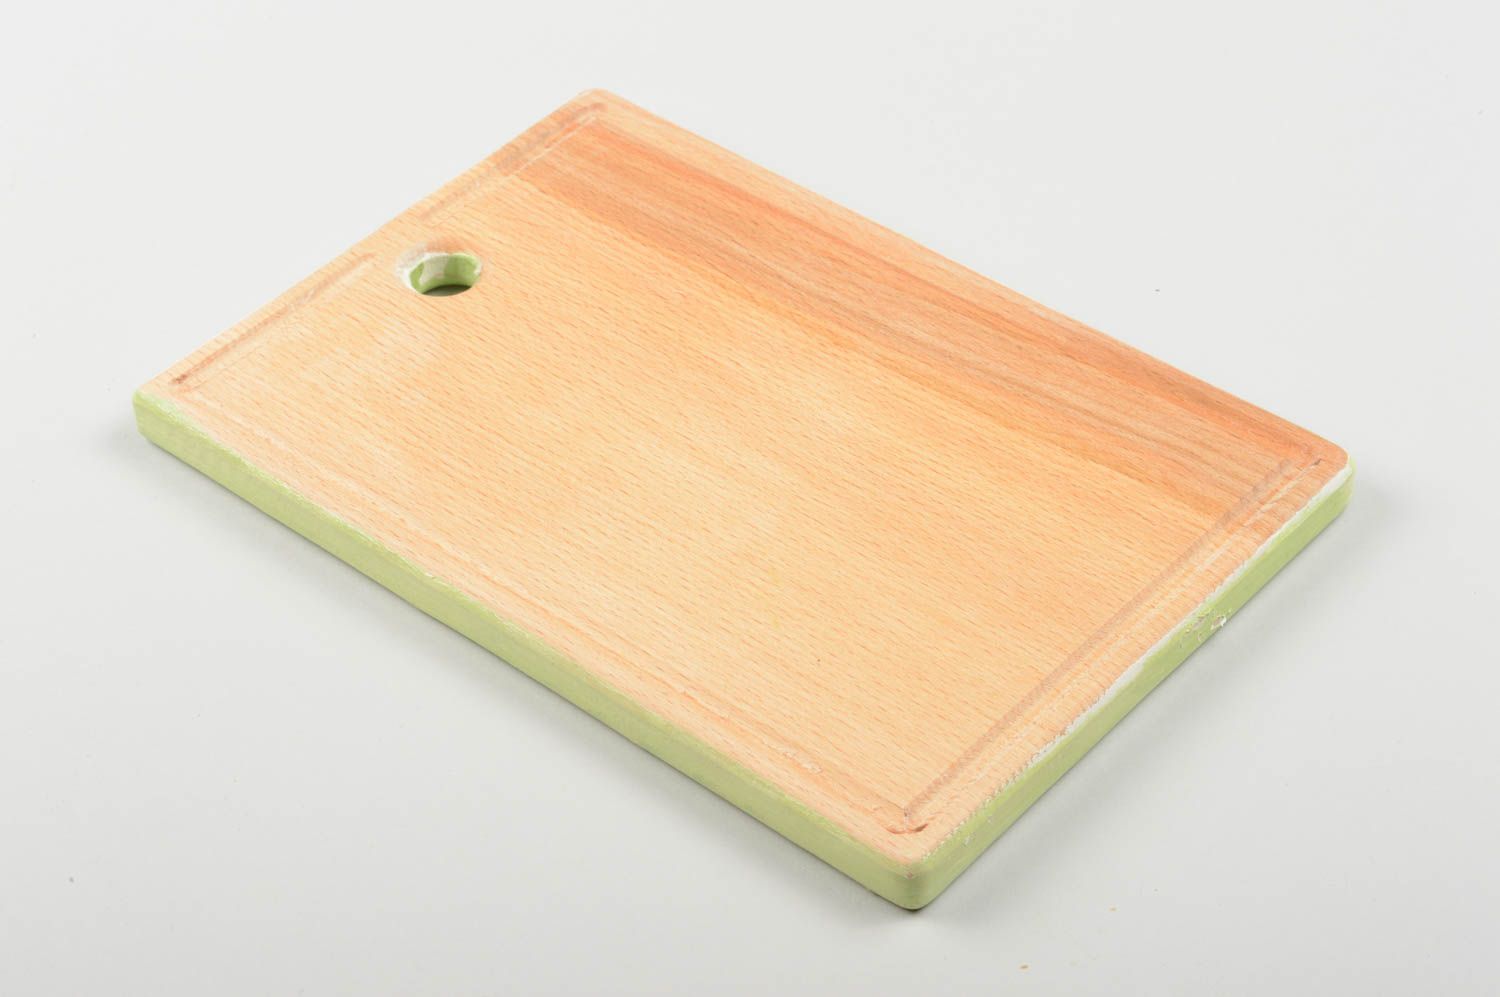 Handmade cutting board wooden chopping board kitchen decor ideas cutting board photo 3